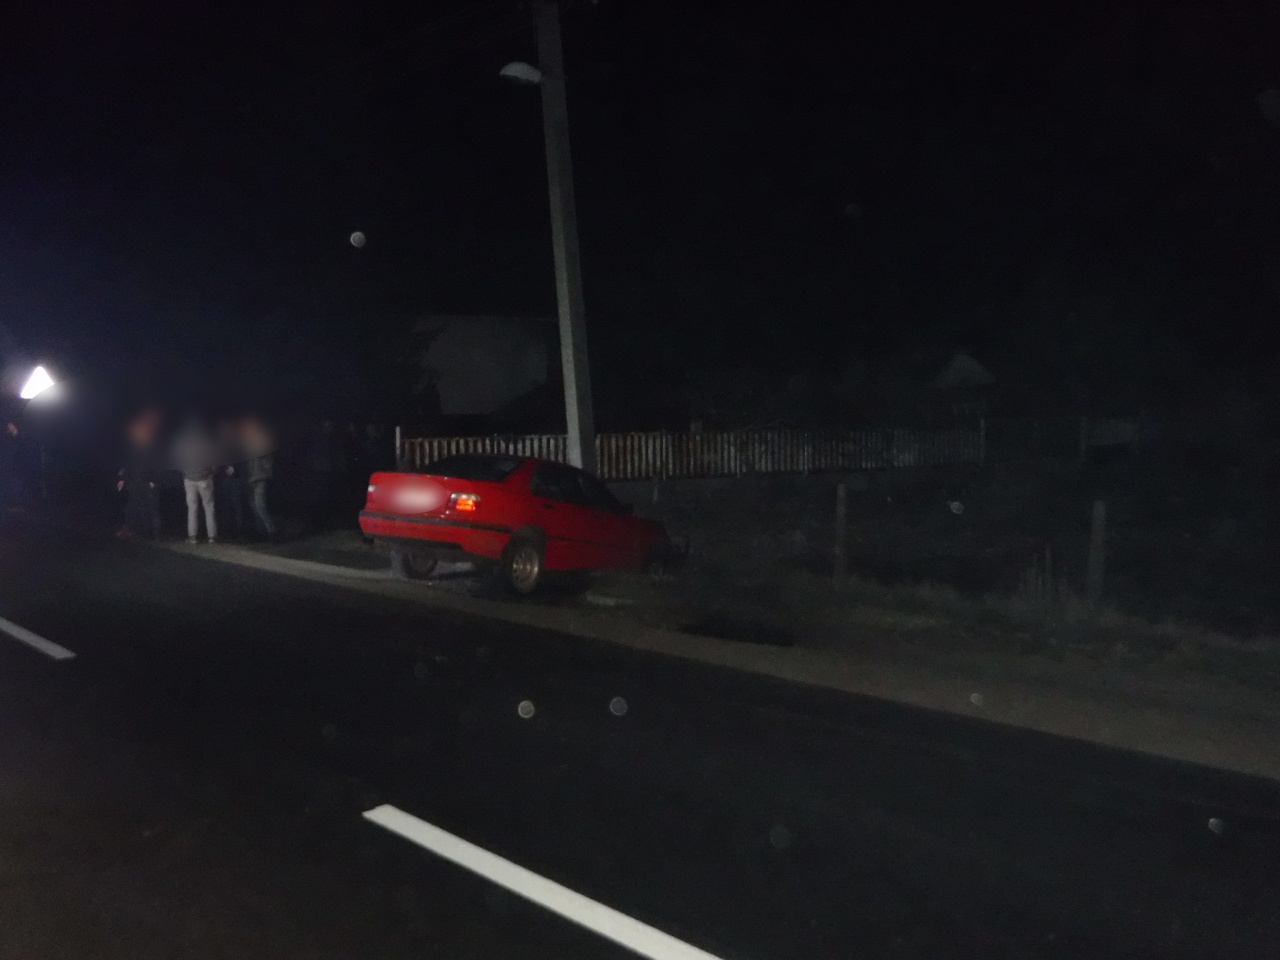 Villanyoszlopnak ütközött egy személygépkocsi csütörtökön este